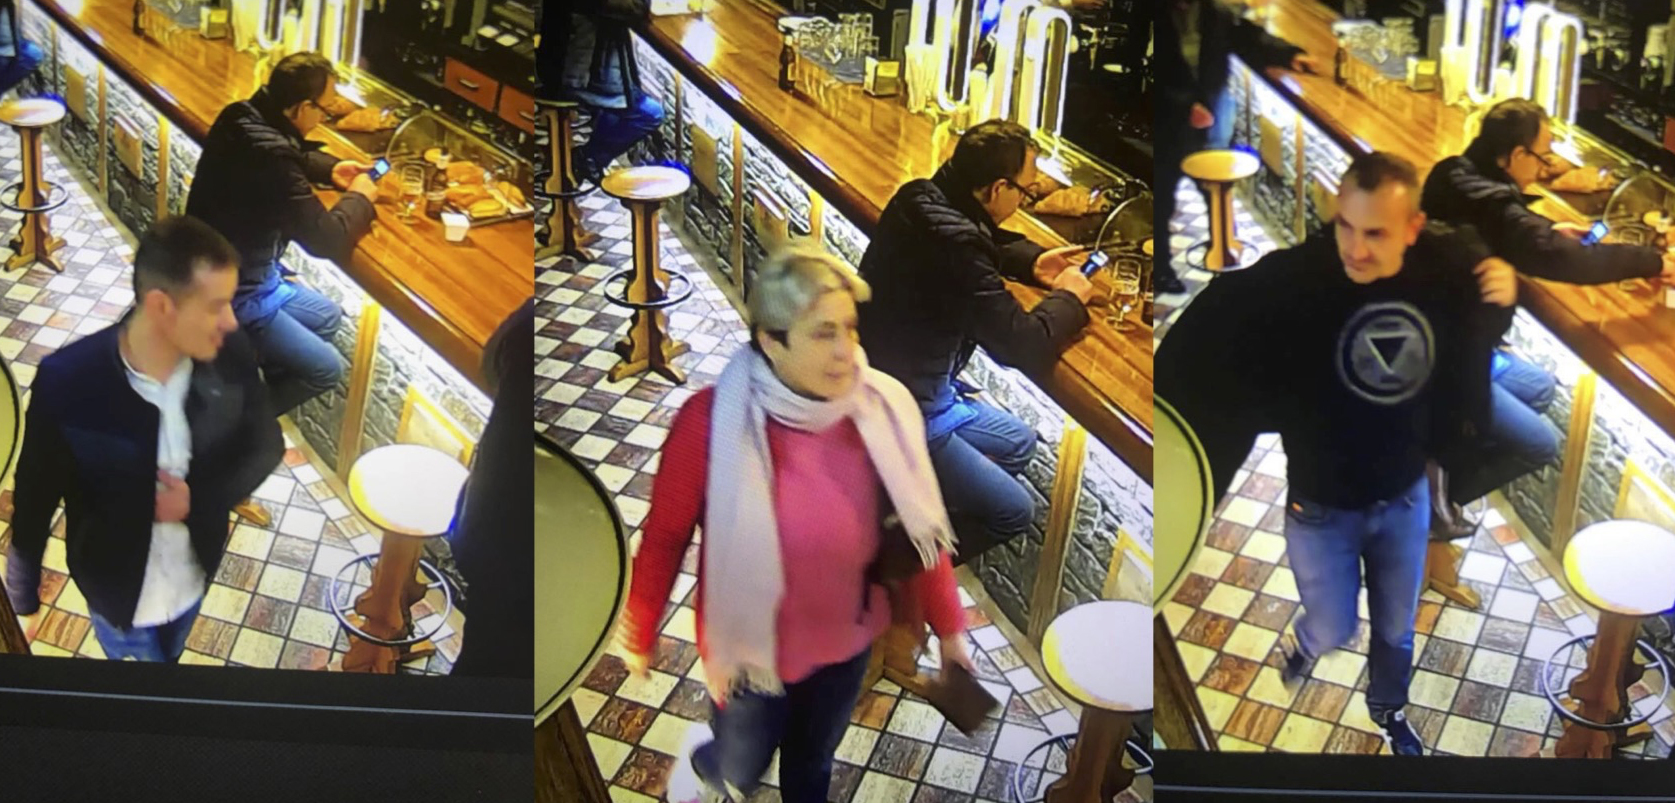 La policia investiga diversos furts en restaurants del centre històric de la capital